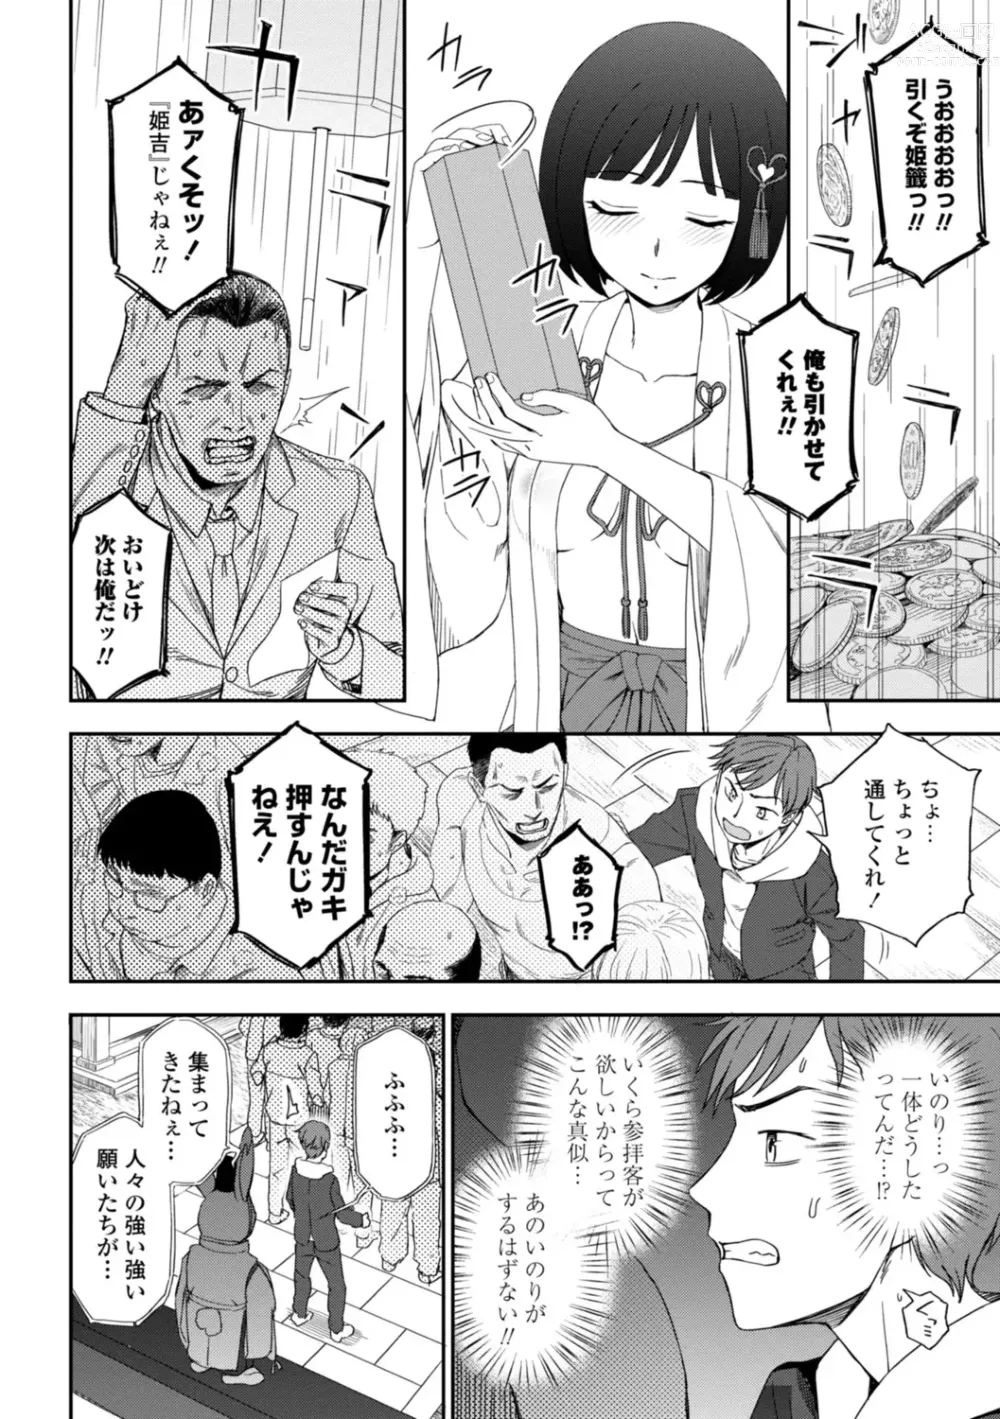 Page 8 of manga Watashi no Subete Sasagemasu - Ill give you all of mine.